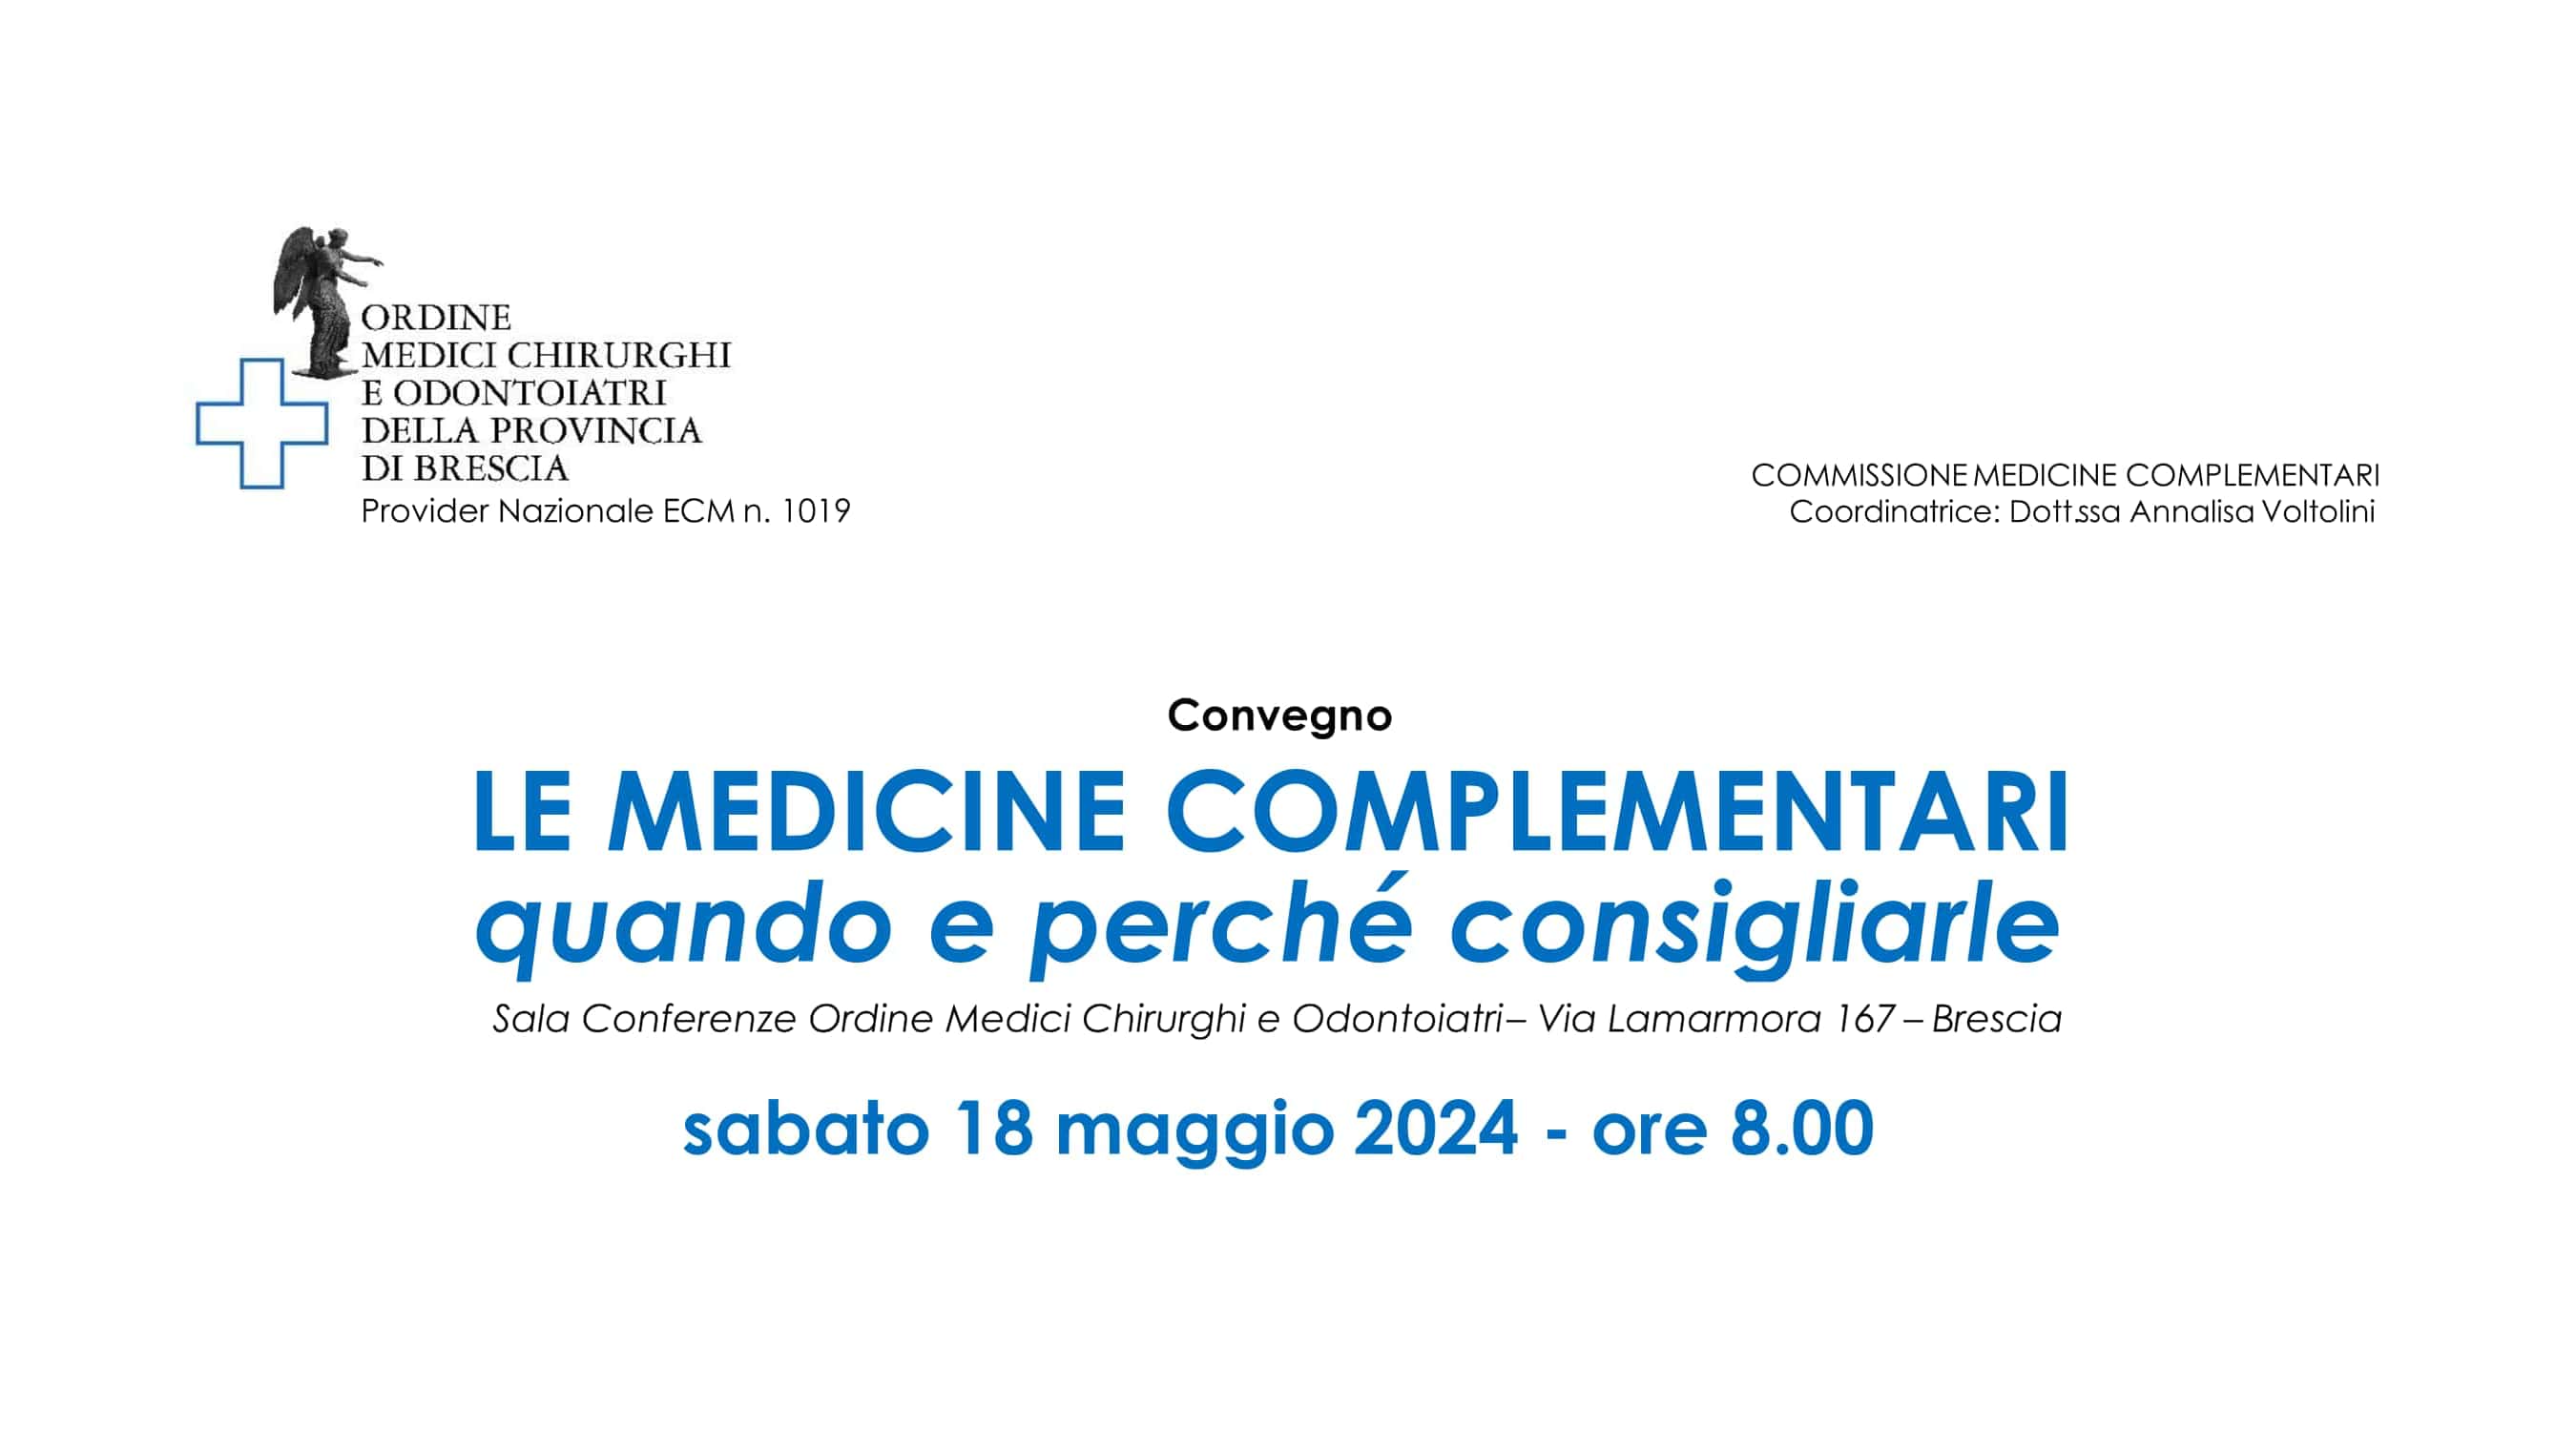 Clicca per accedere all'articolo “Le medicine complementari: quando e perché consigliarle” - Brescia, 18 maggio 2024